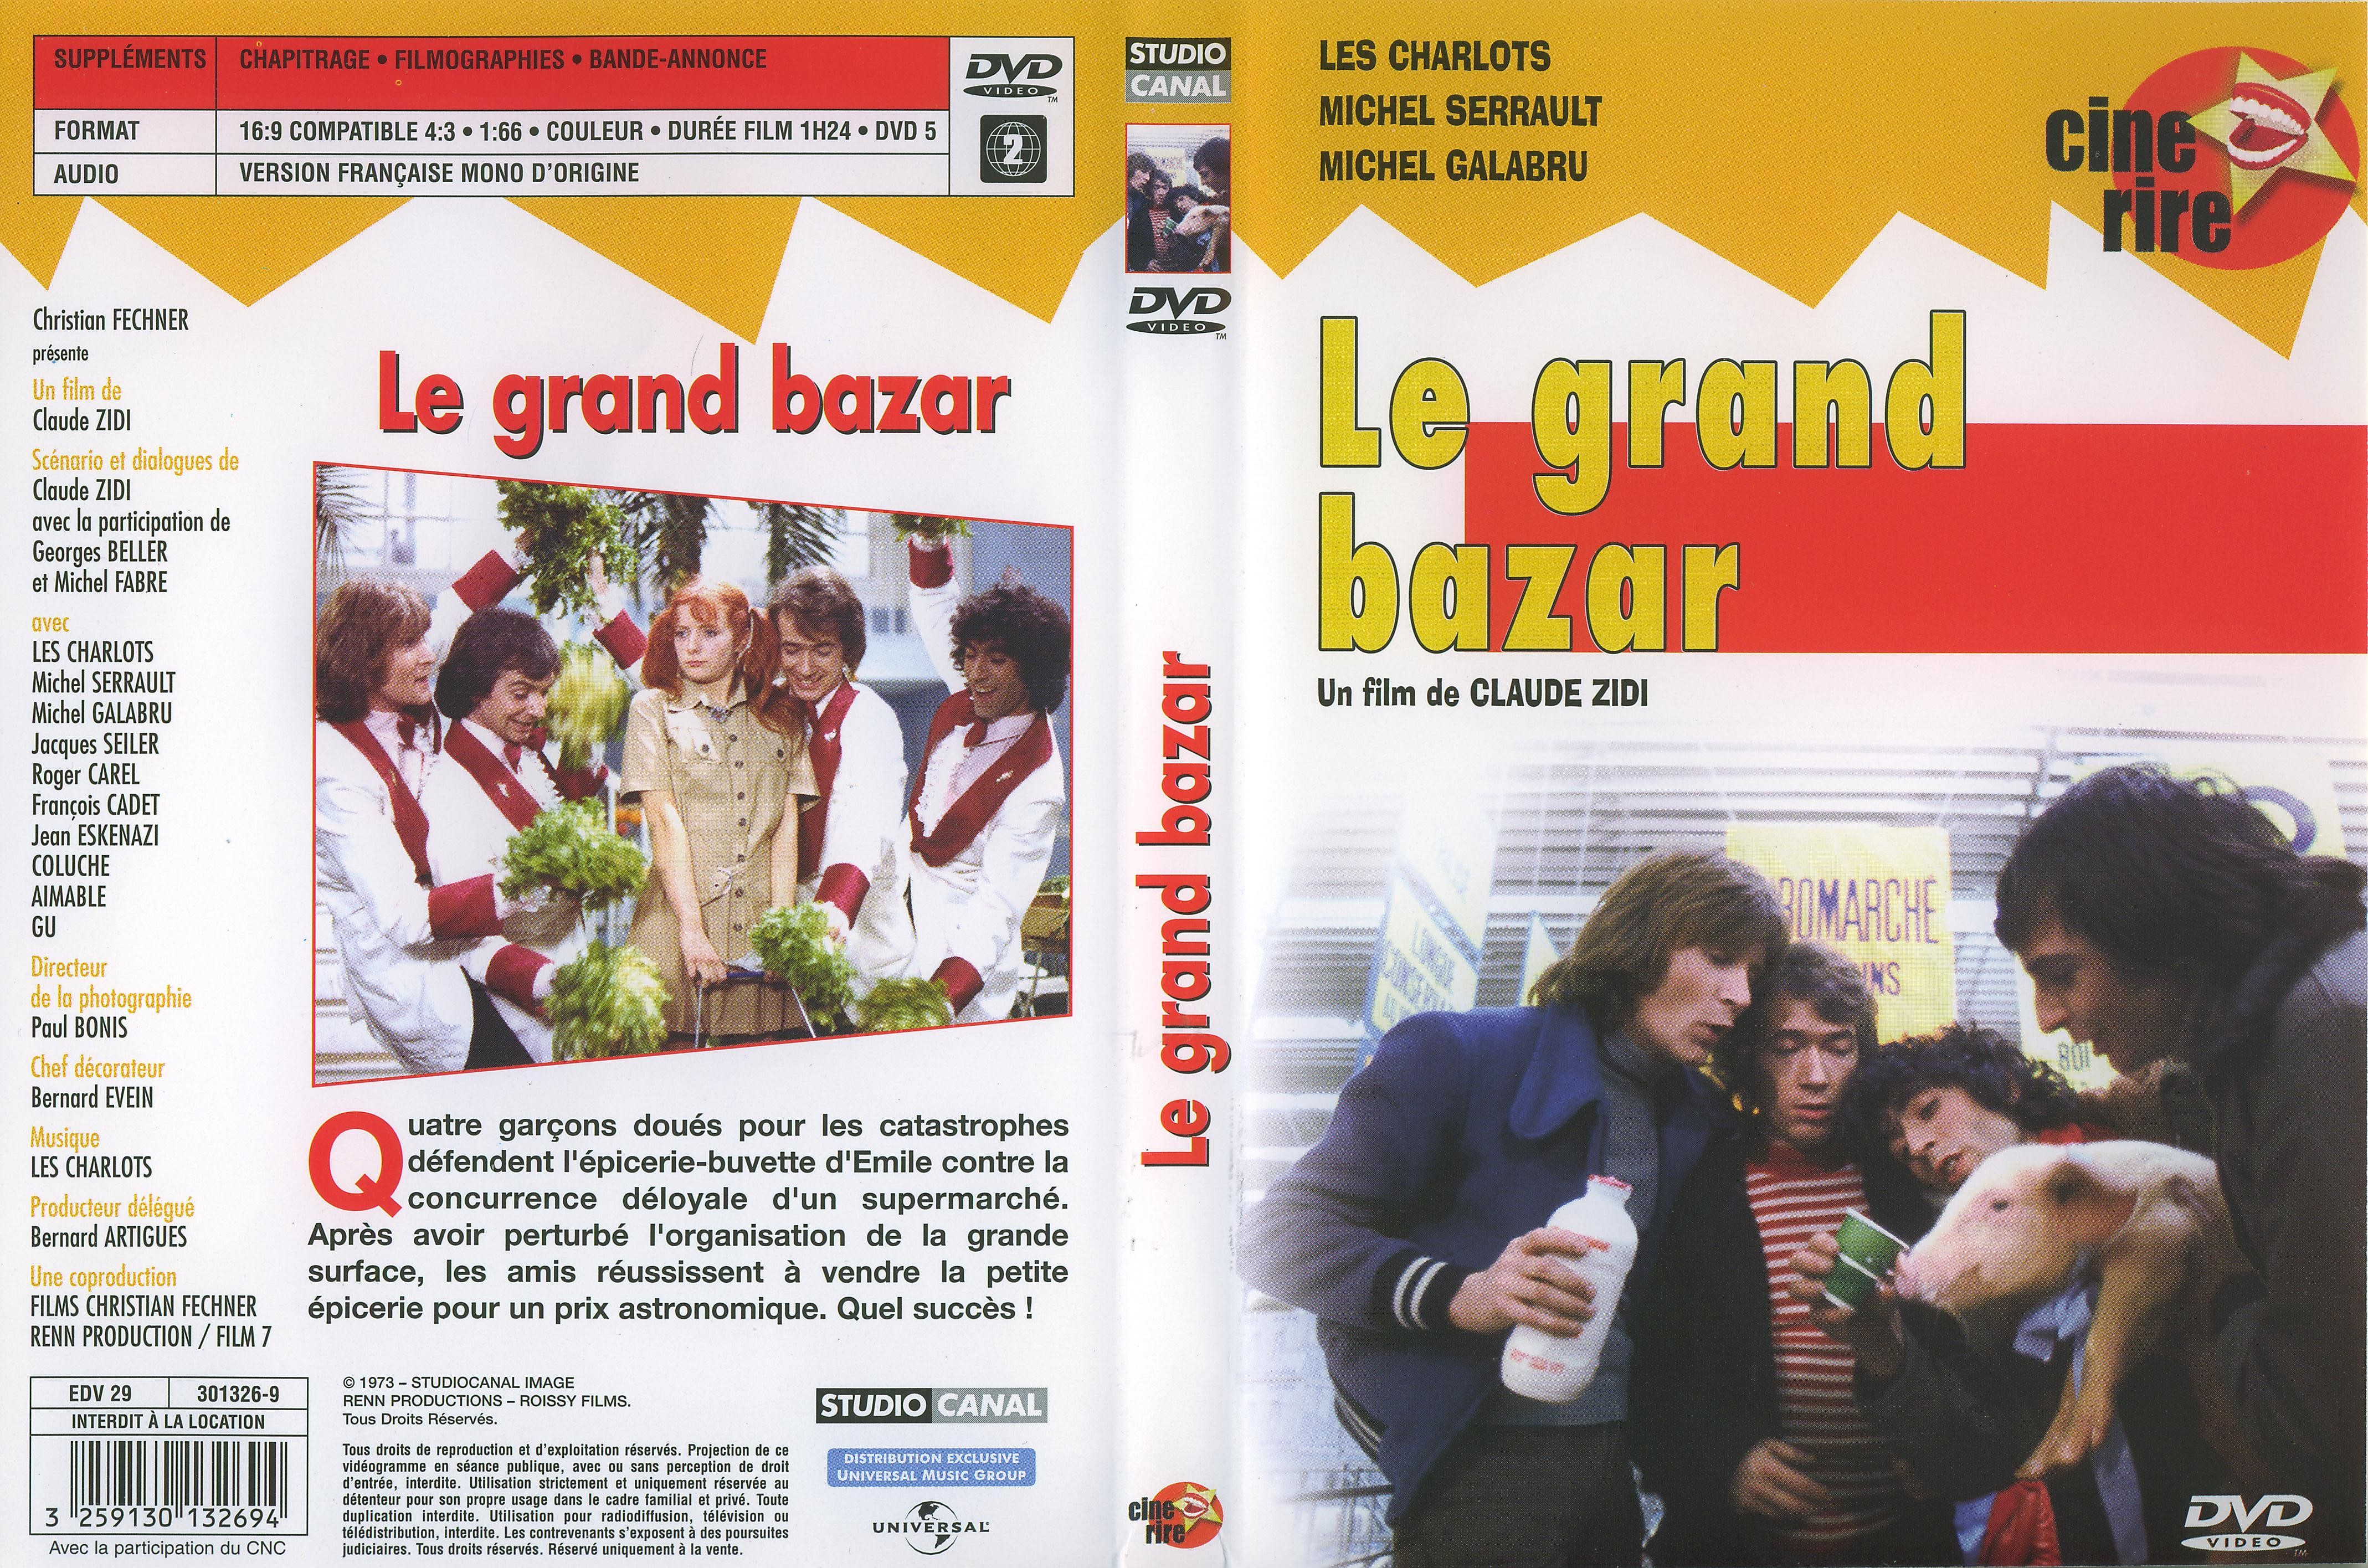 Jaquette Dvd De Le Grand Bazar Cinéma Passion